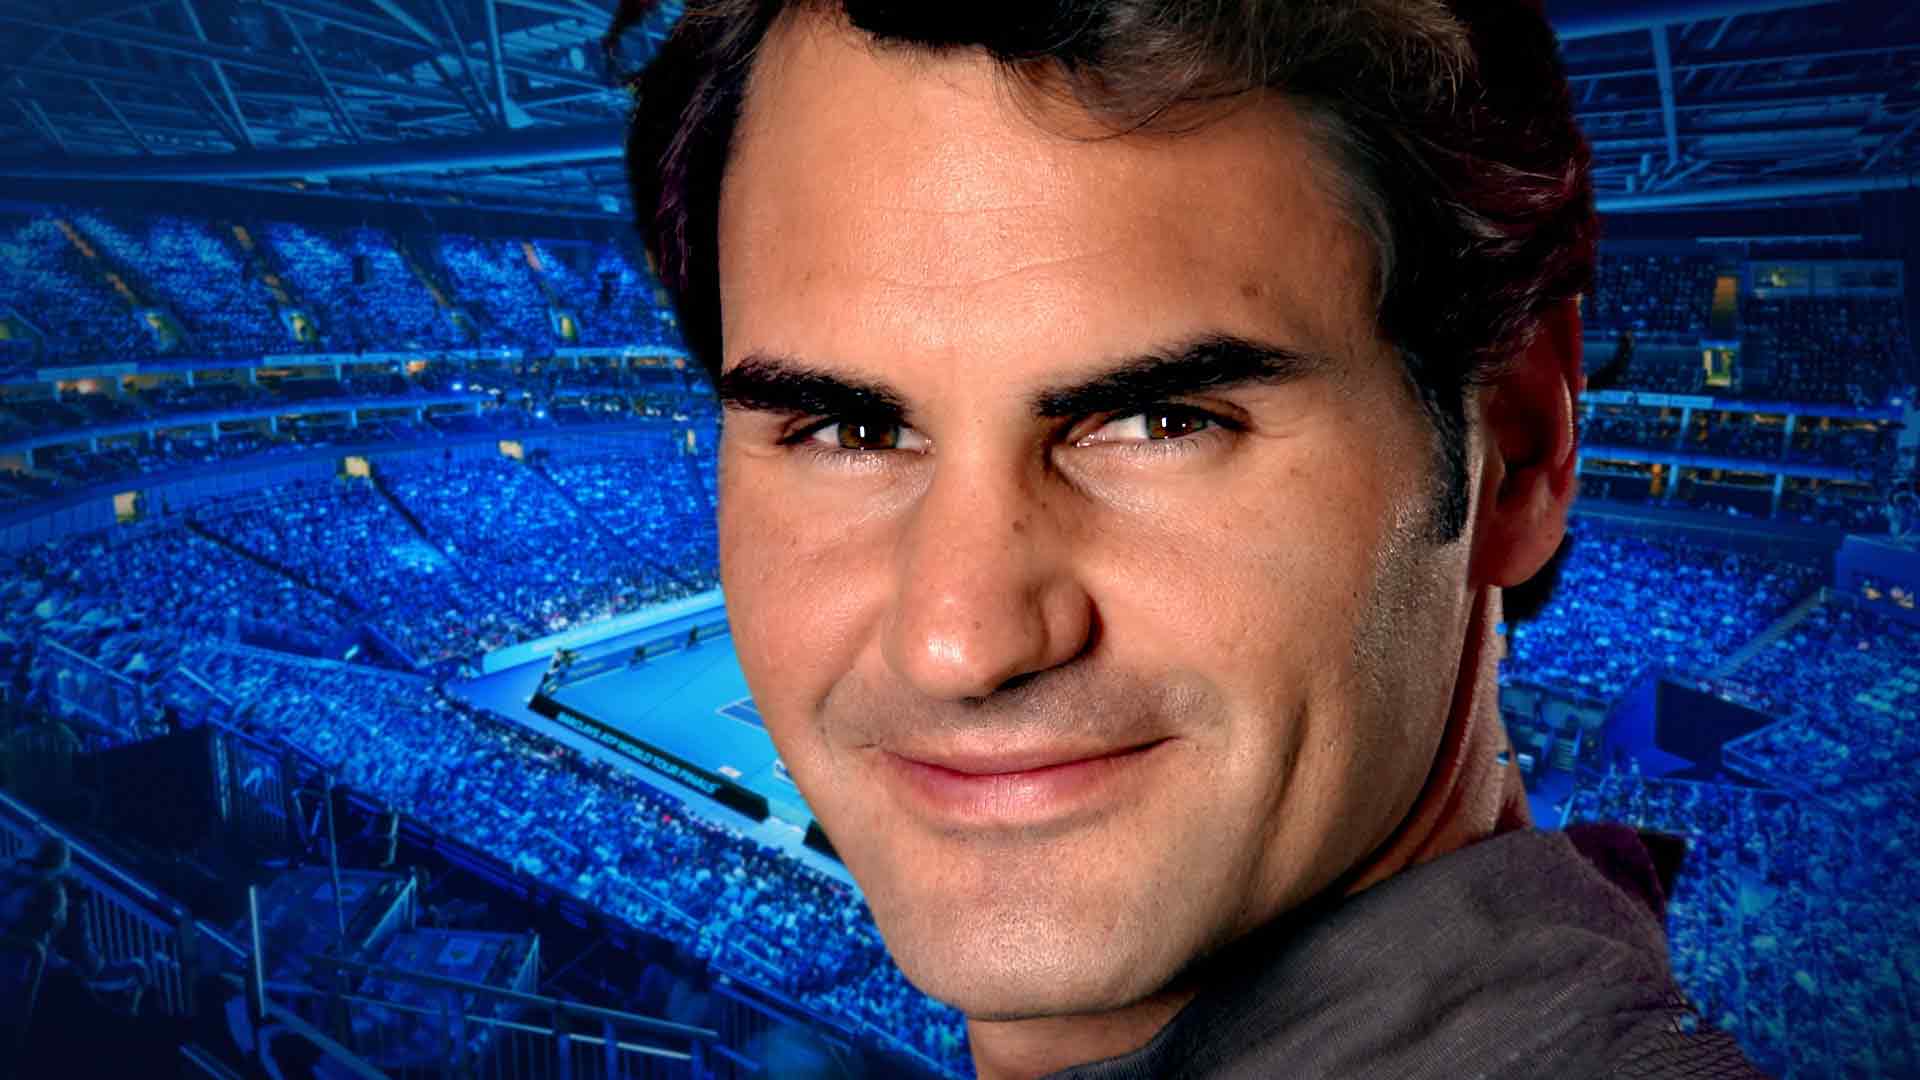 Roger Federer 2015 Barclays ATP World Tour Finals Profile